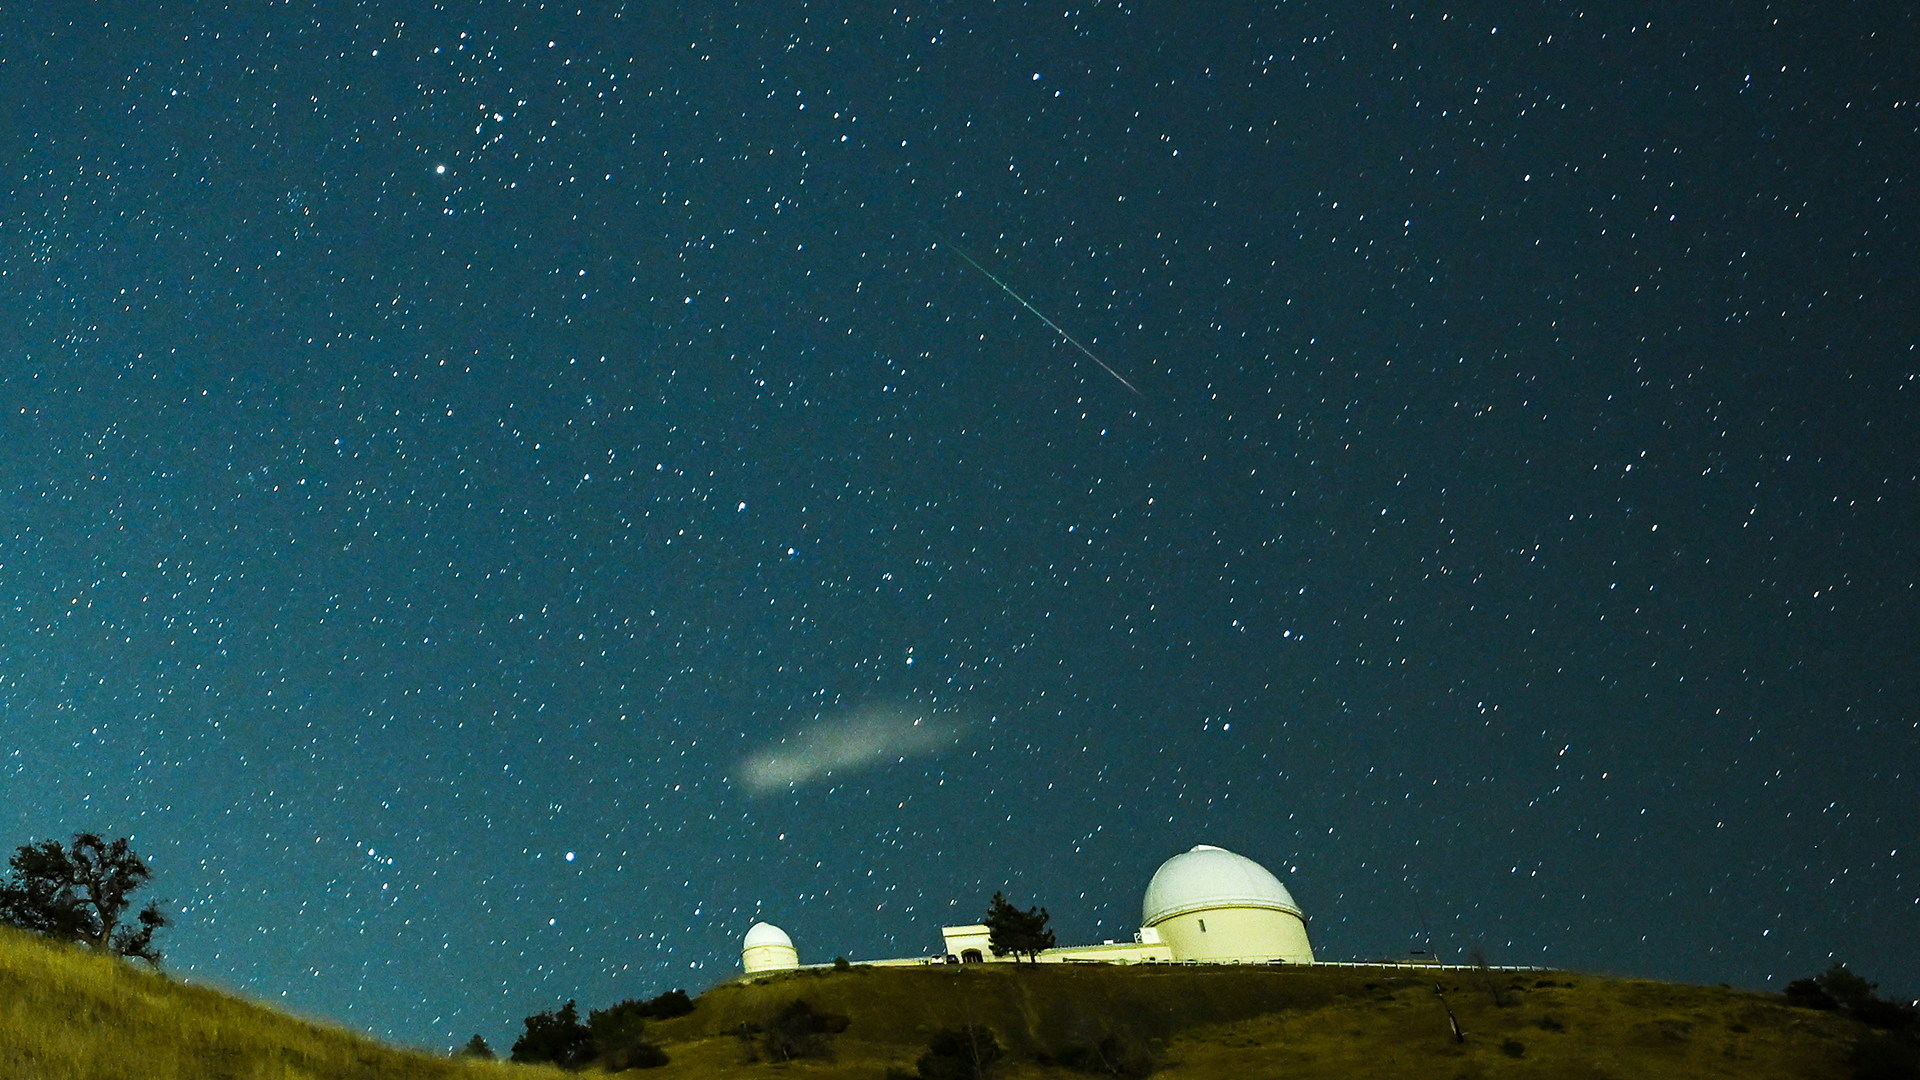 Un météore traverse le ciel nocturne au-dessus de l'observatoire de Lick pendant la pluie de météores des Perséides.